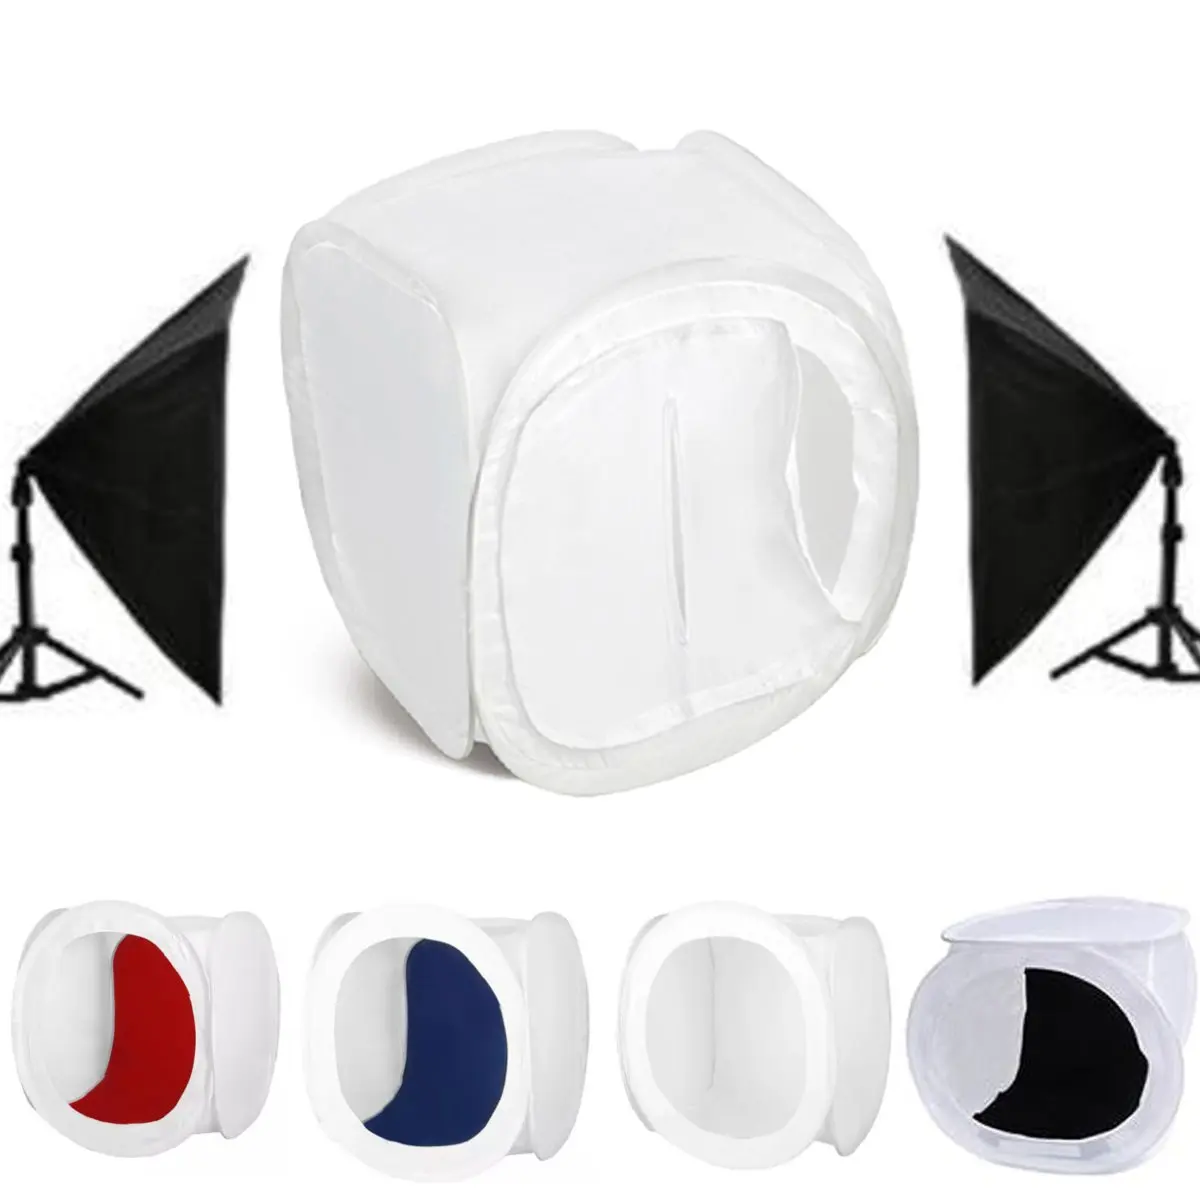 Портативный светильник для студийной фотосъемки, светильник ing, мини настольный шатер-фон для фотосъемки, складной фон 30x30x30cm